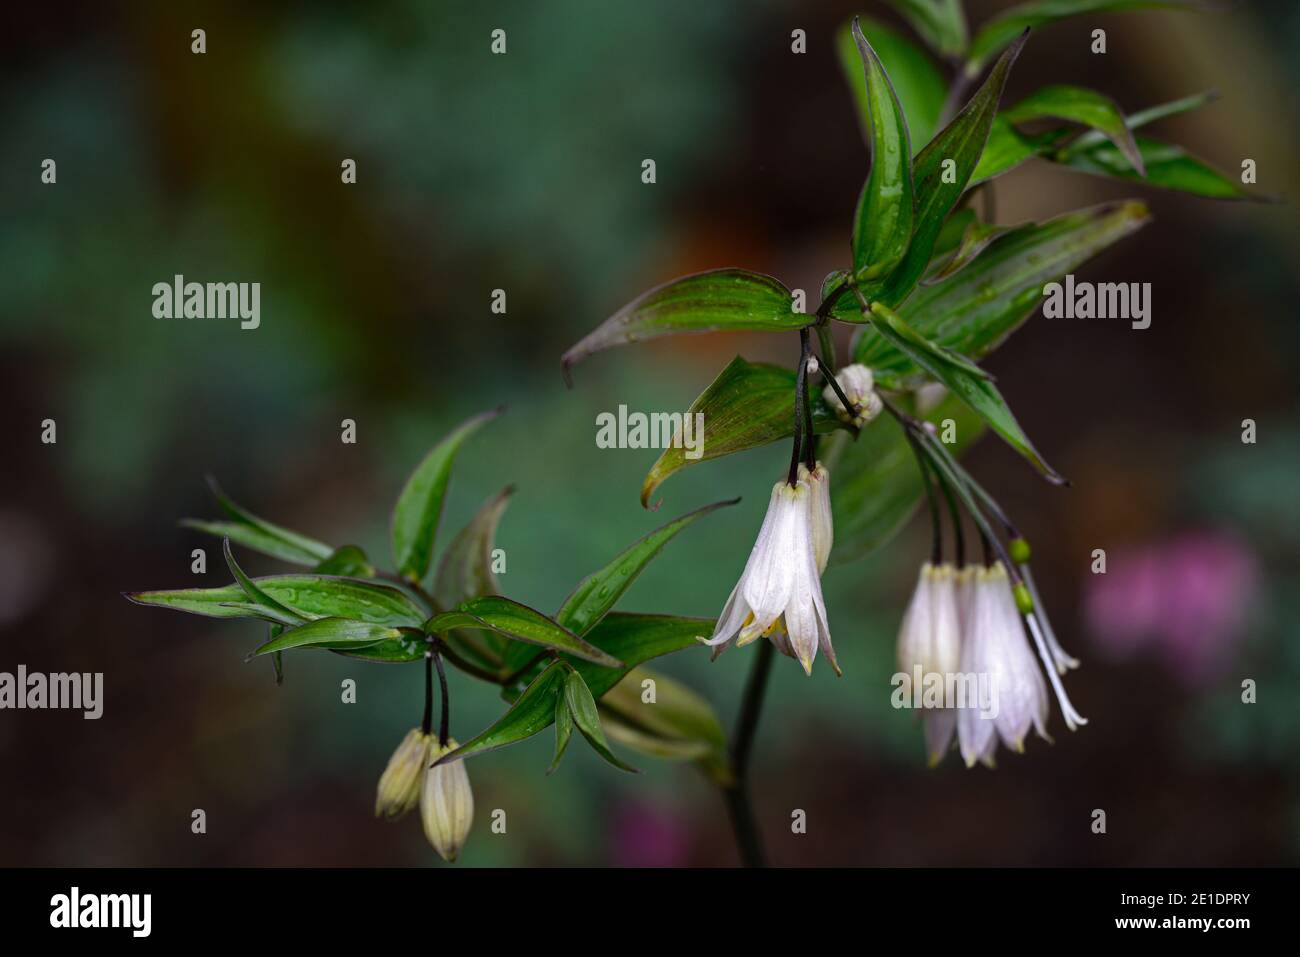 Disporum,dwarf,white flowers,dark stemmed,dark stems,flower,flowers,flowering,garden,RM Floral Stock Photo